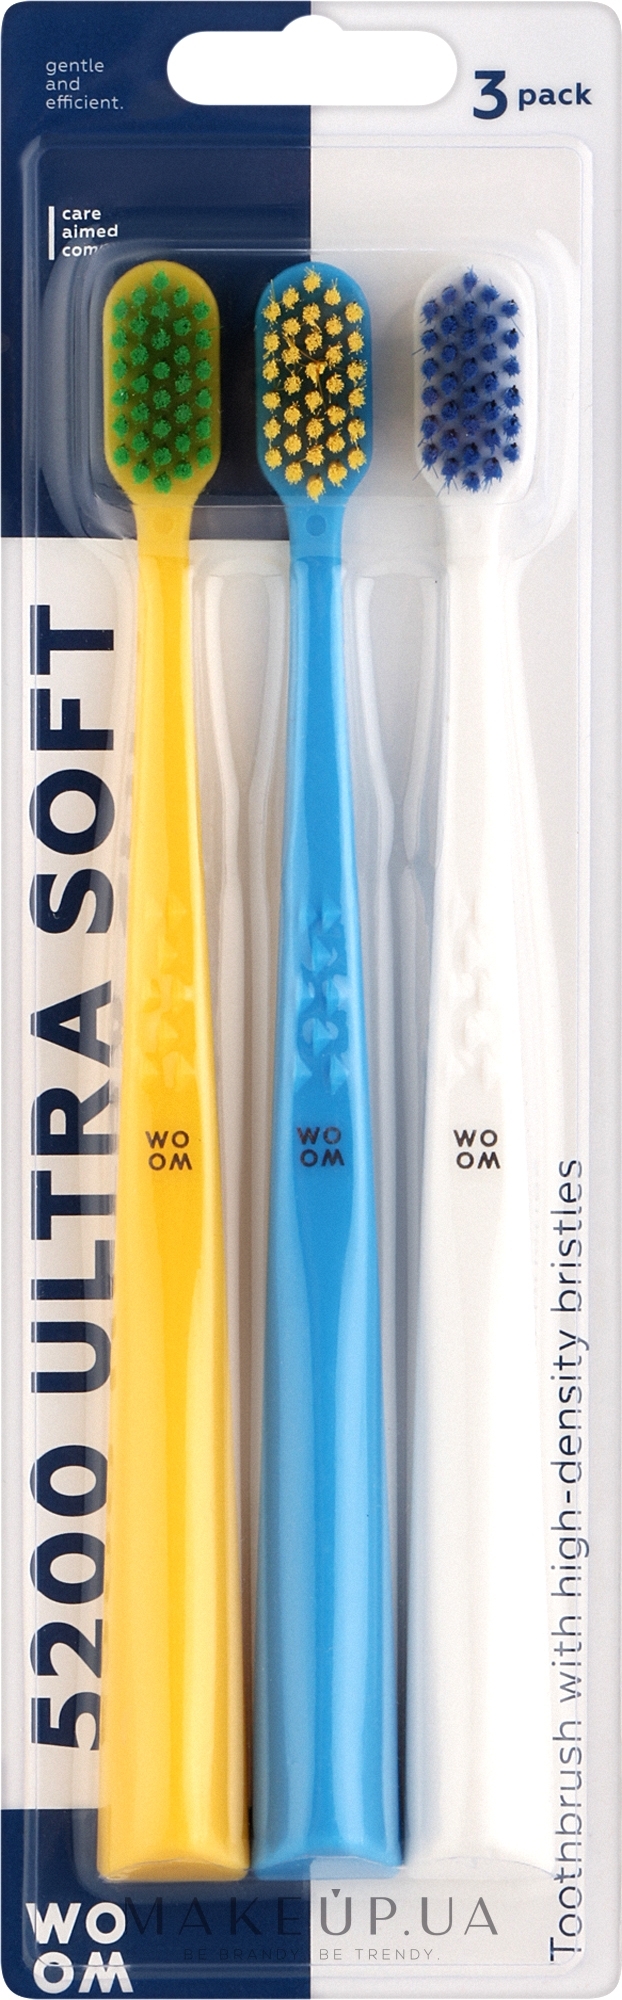 Набір зубних щіток, мікс кольорів, 3 шт. - Woom 5200 Ultra Soft — фото 3шт